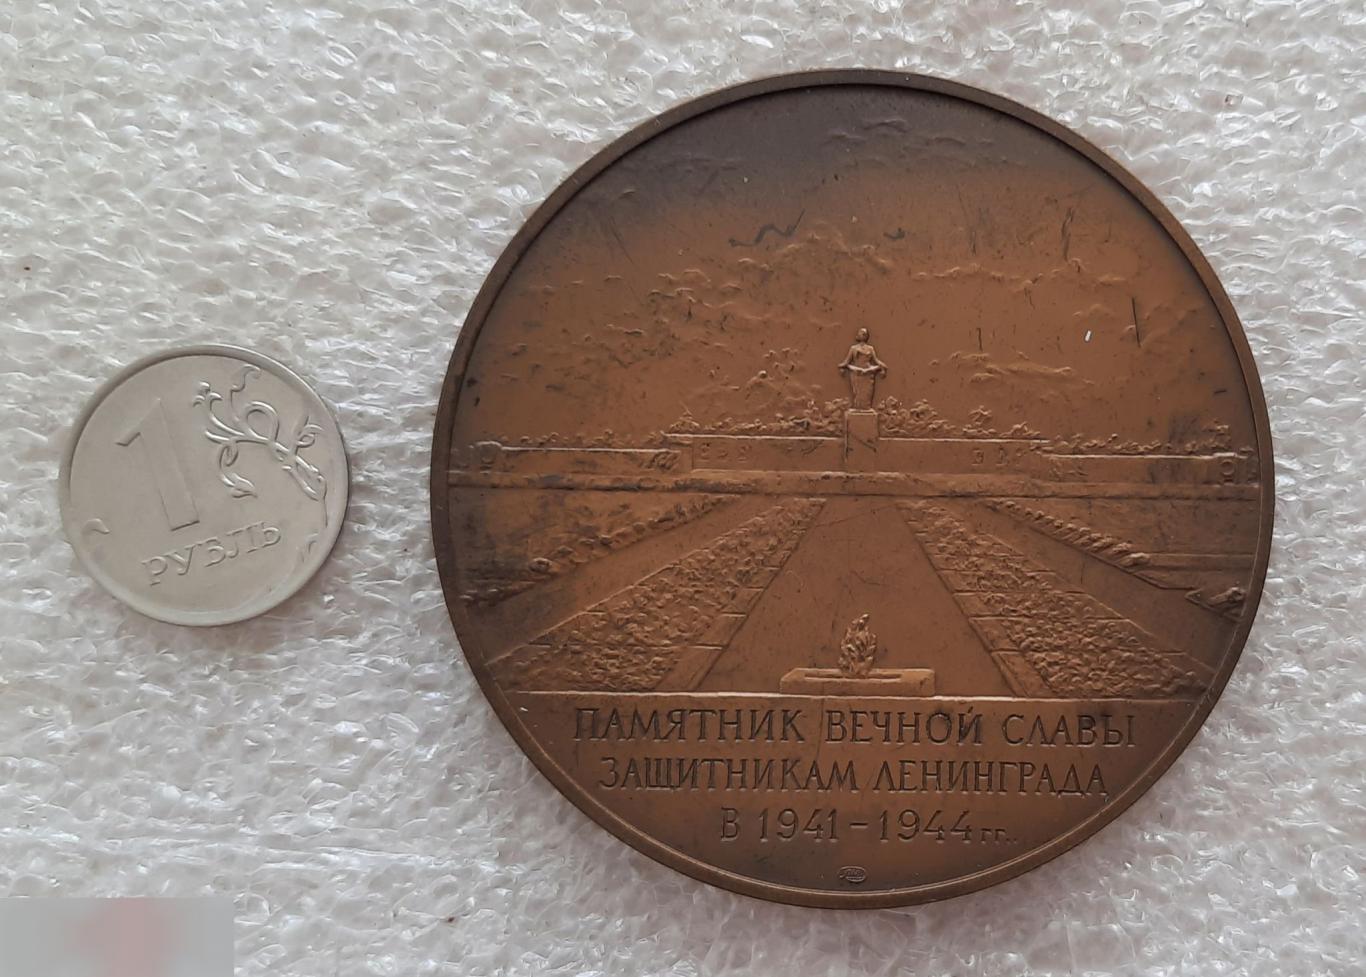 Медаль, Монетный Двор, Памятник Вечной Славы Защитникам Ленинграда, Санкт-Петербург, 1988 год, ЛМД 2